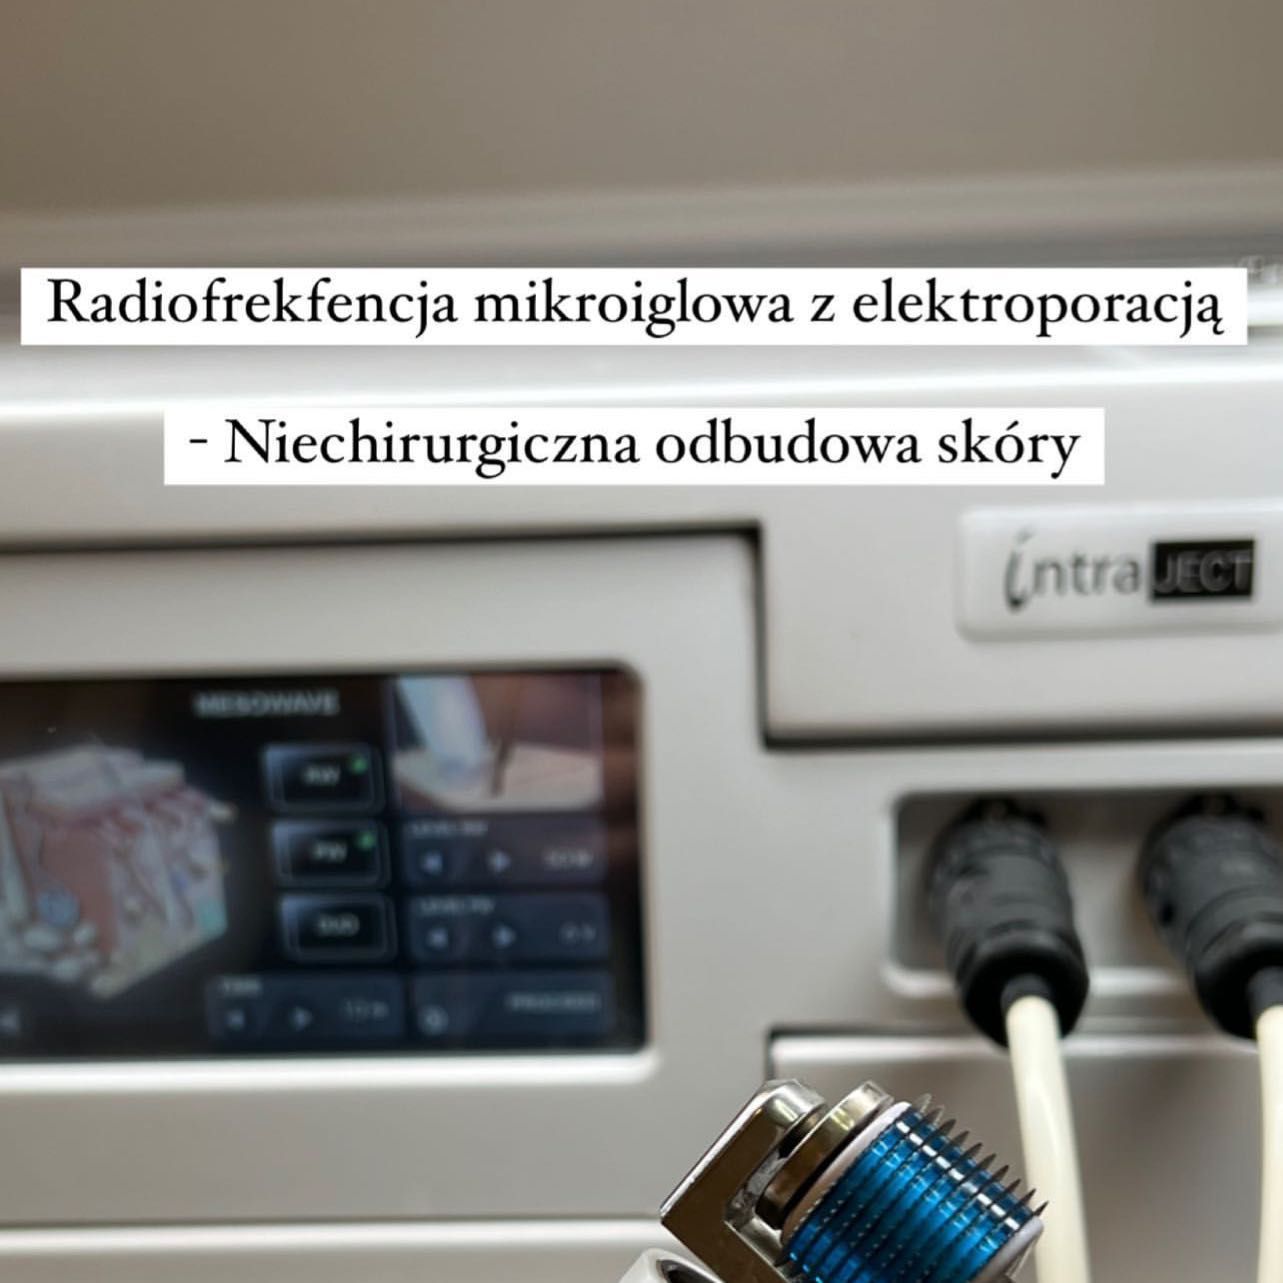 Portfolio usługi RF mikroigłowy z elektroporacją TWARZ+osocze+fibry